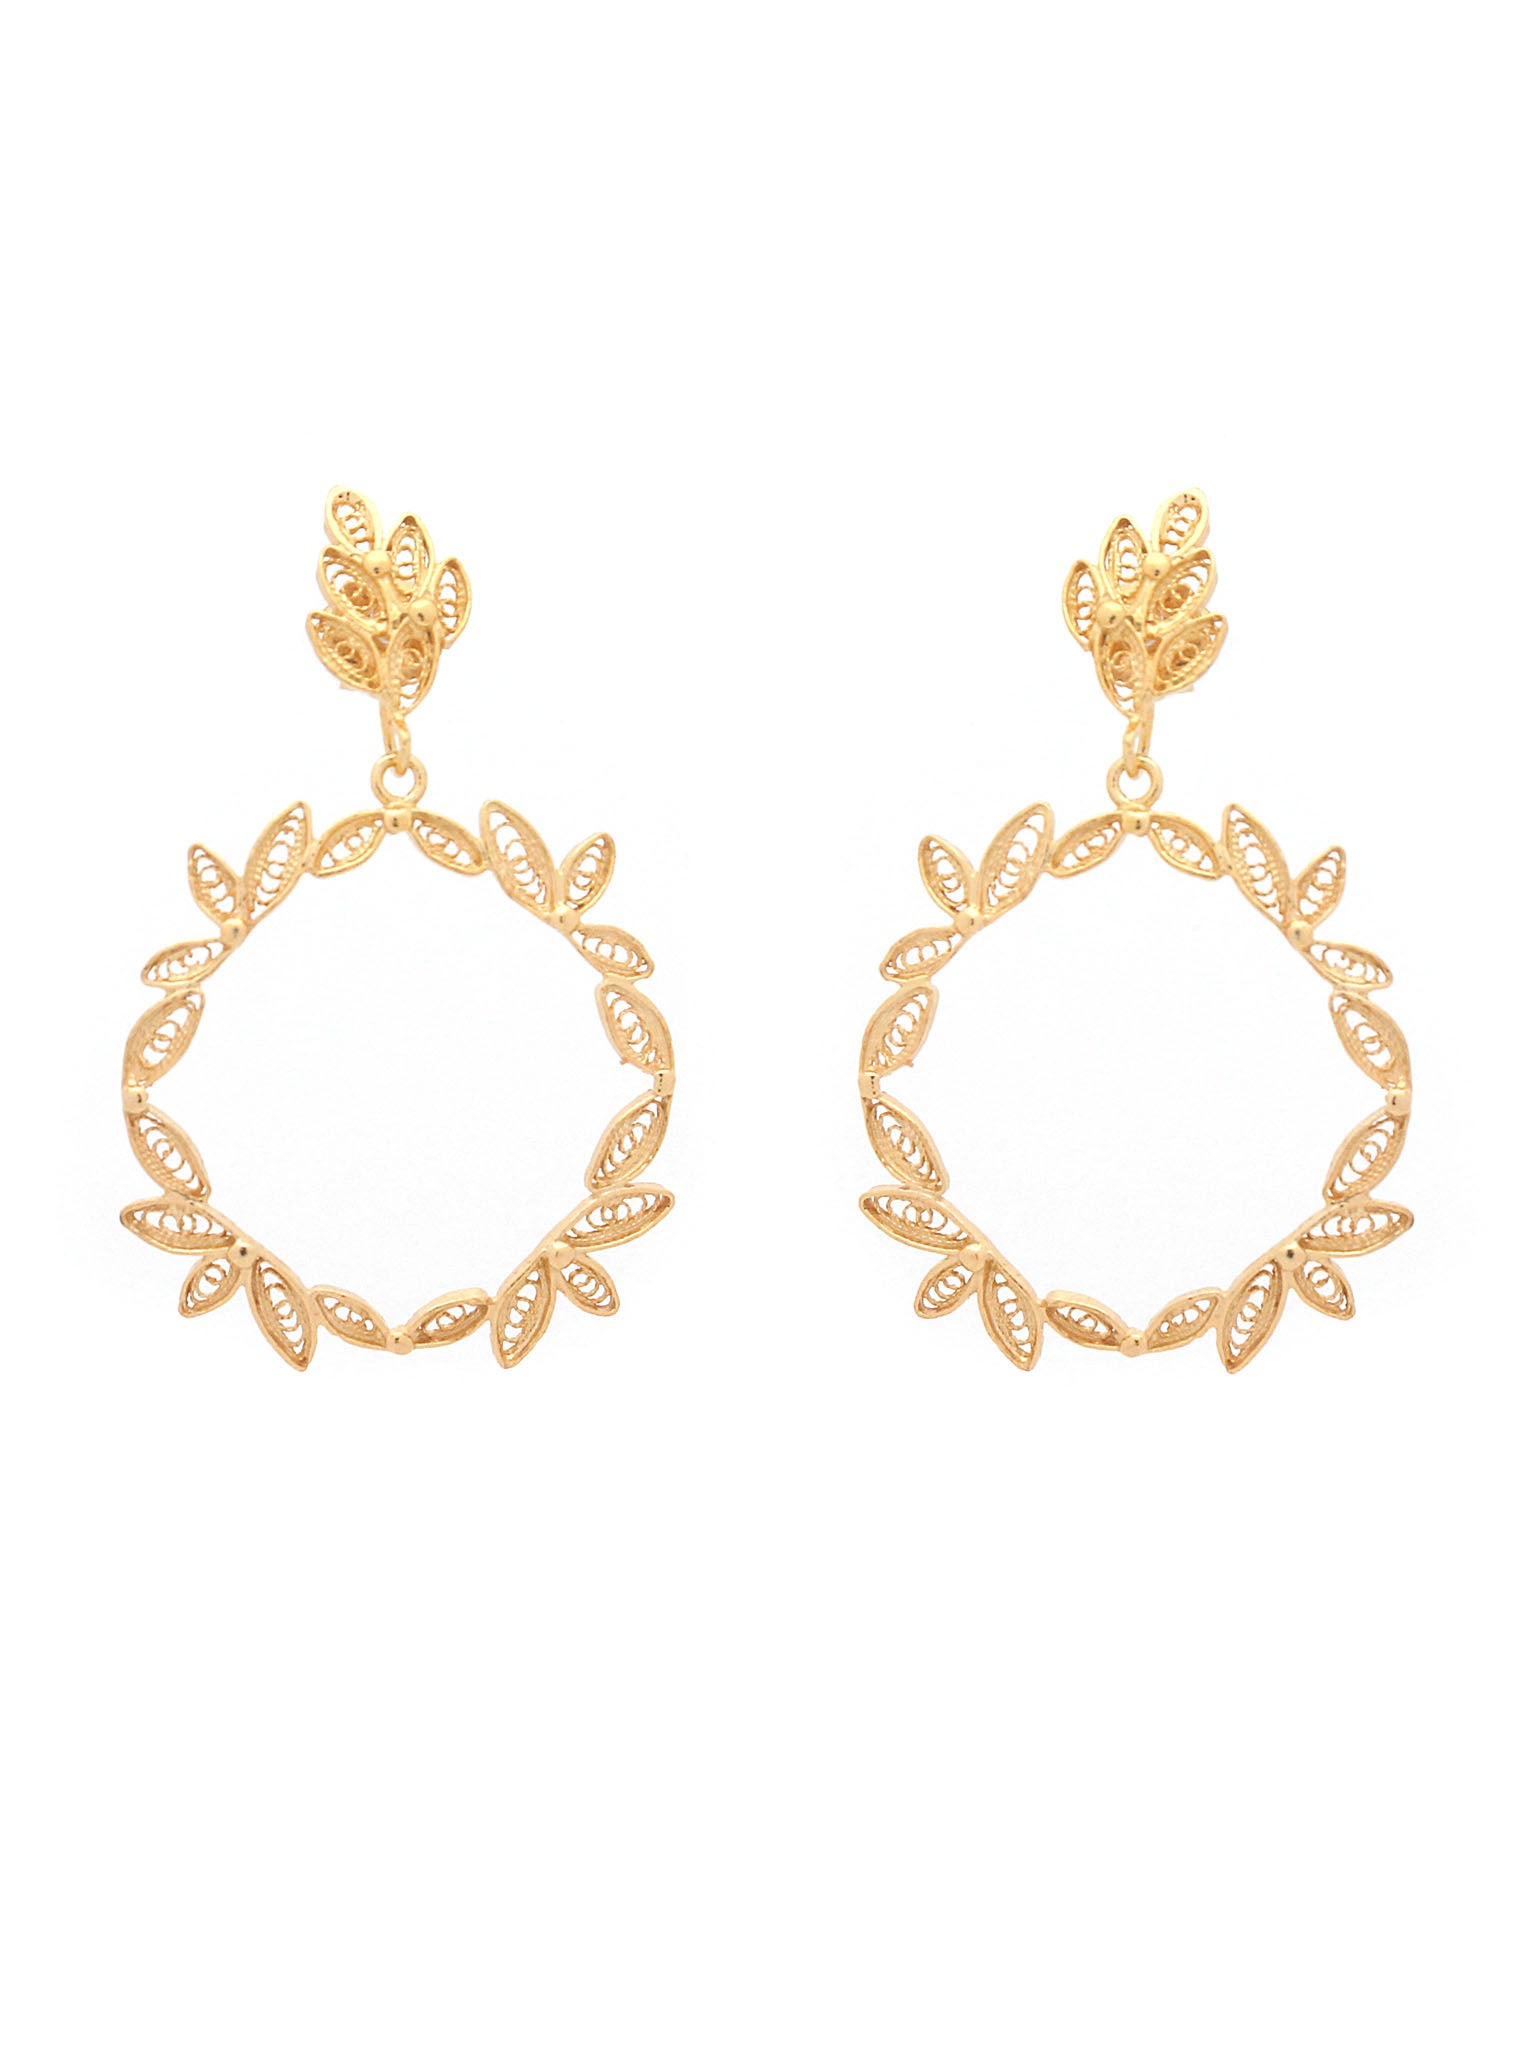 earrings Crown of Caesar